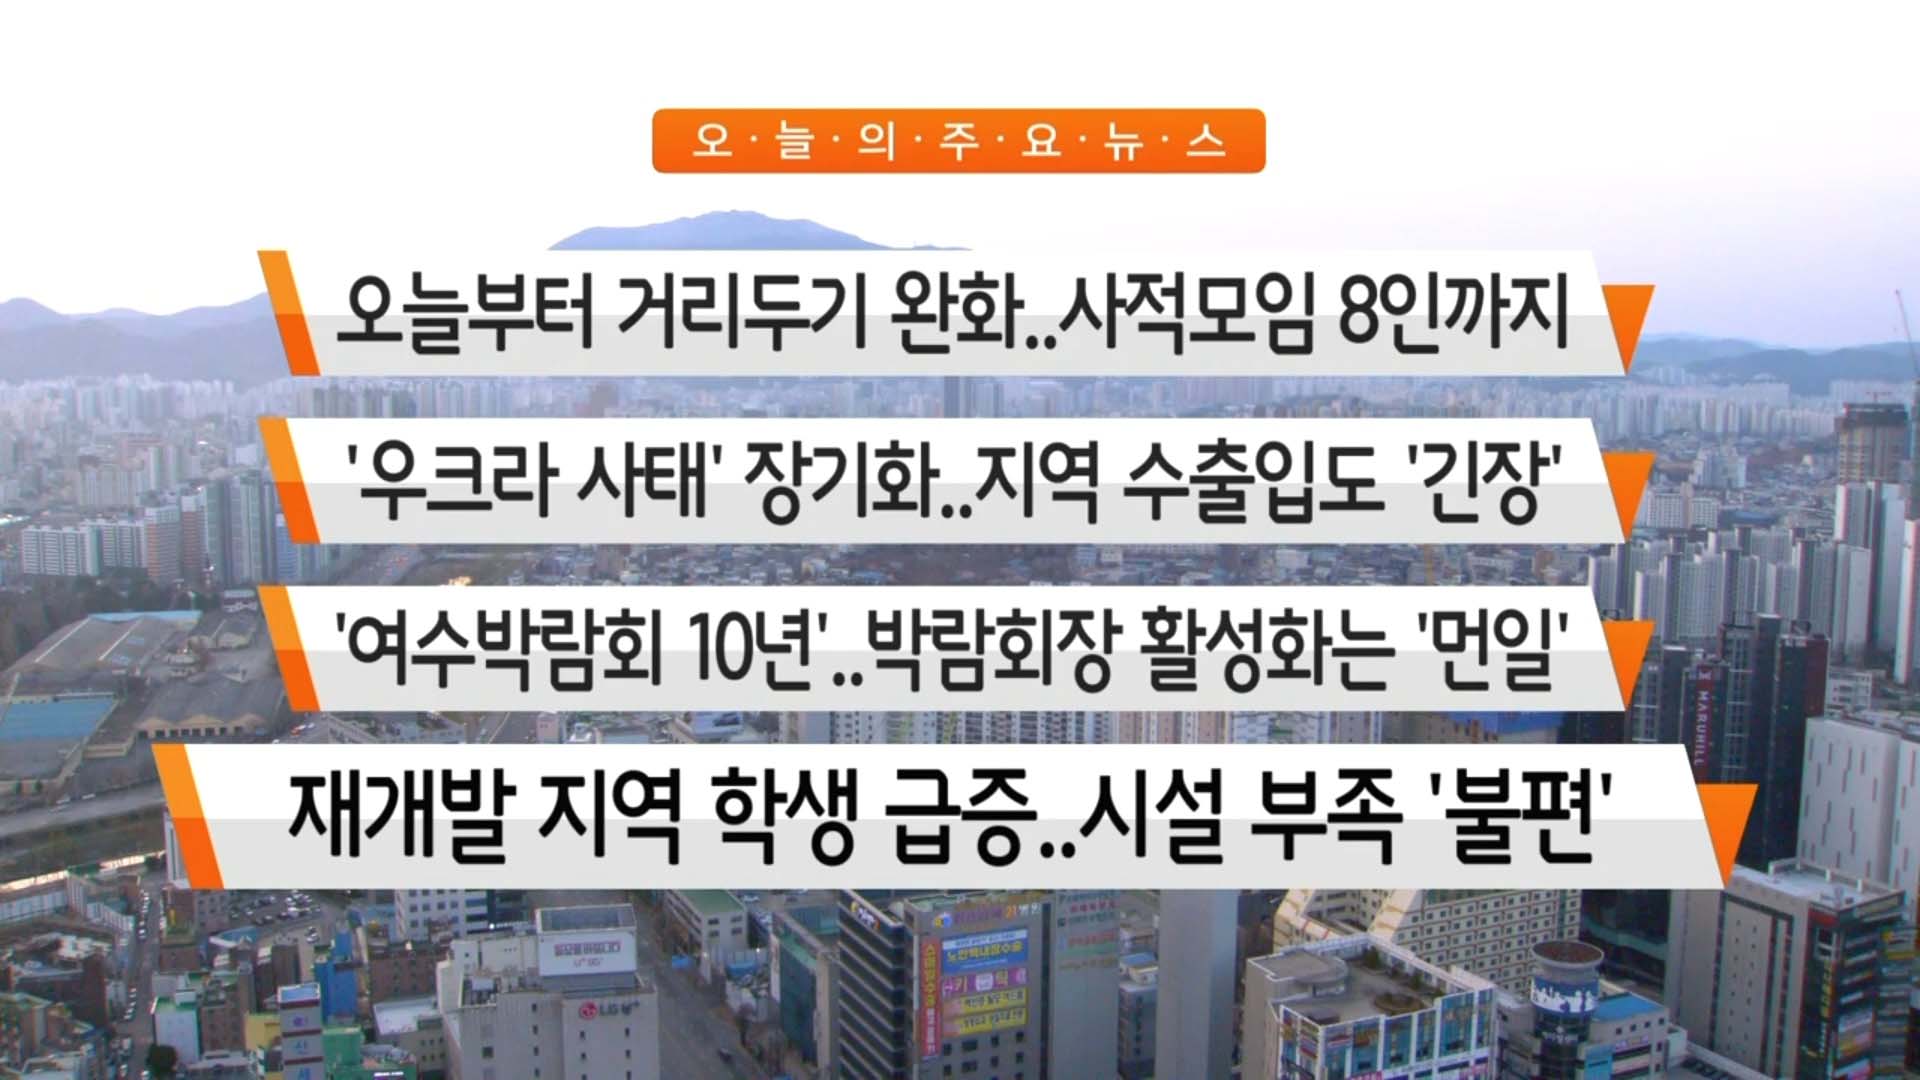 3/21(월) 타이틀 + 주요뉴스